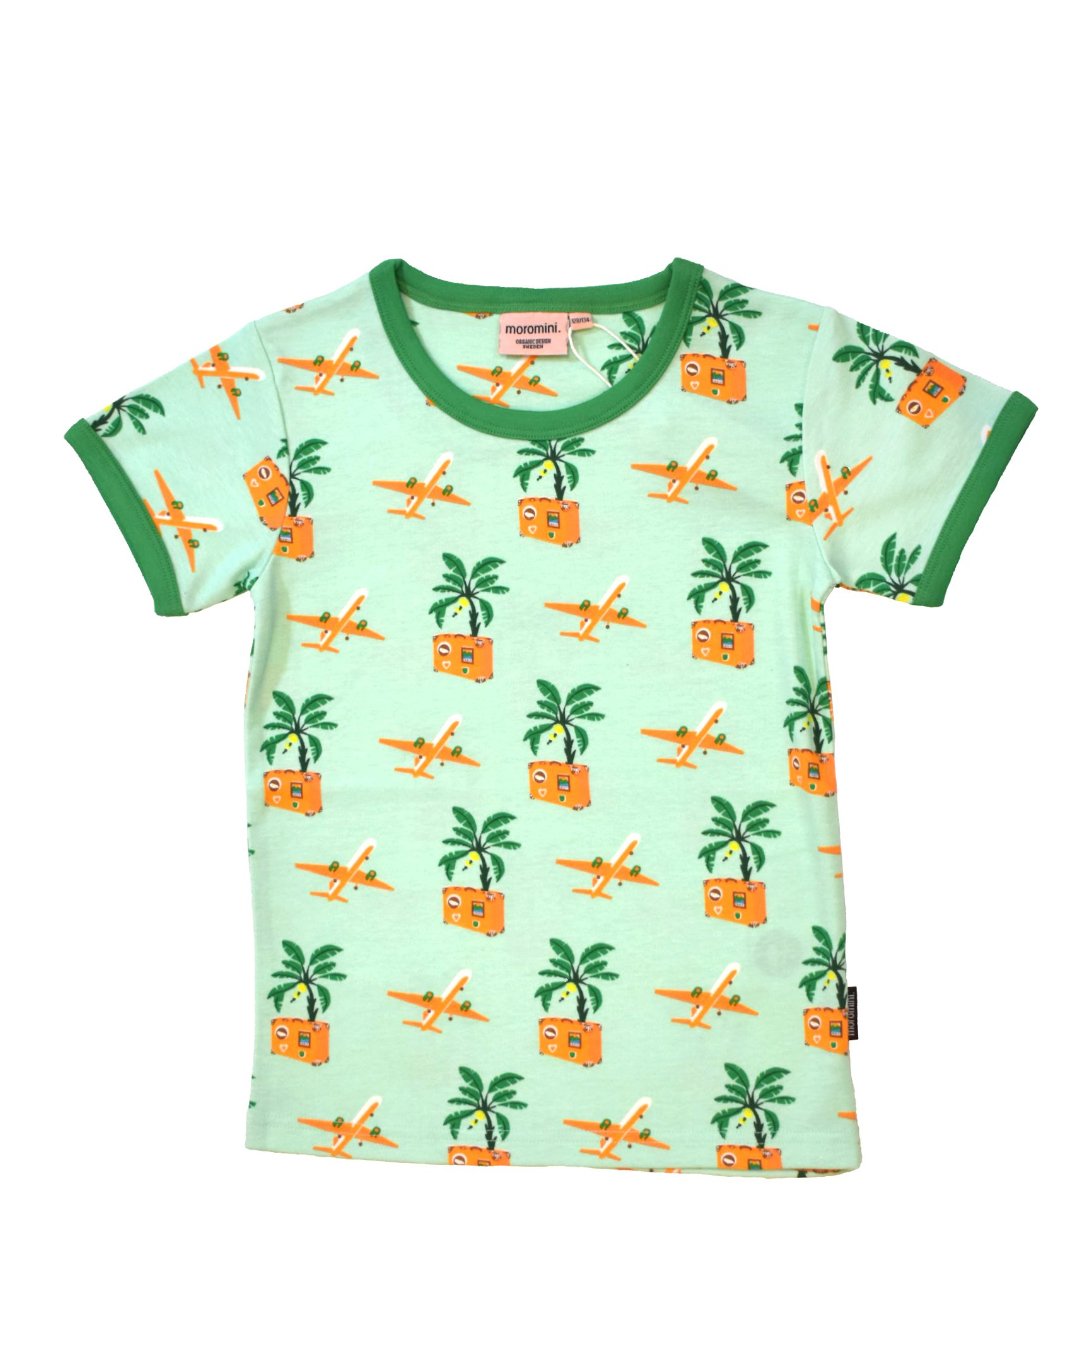 Grünes T-Shirt mit Koffern und Flugzeugen und Palmen aus Biobaumwolle von moromini